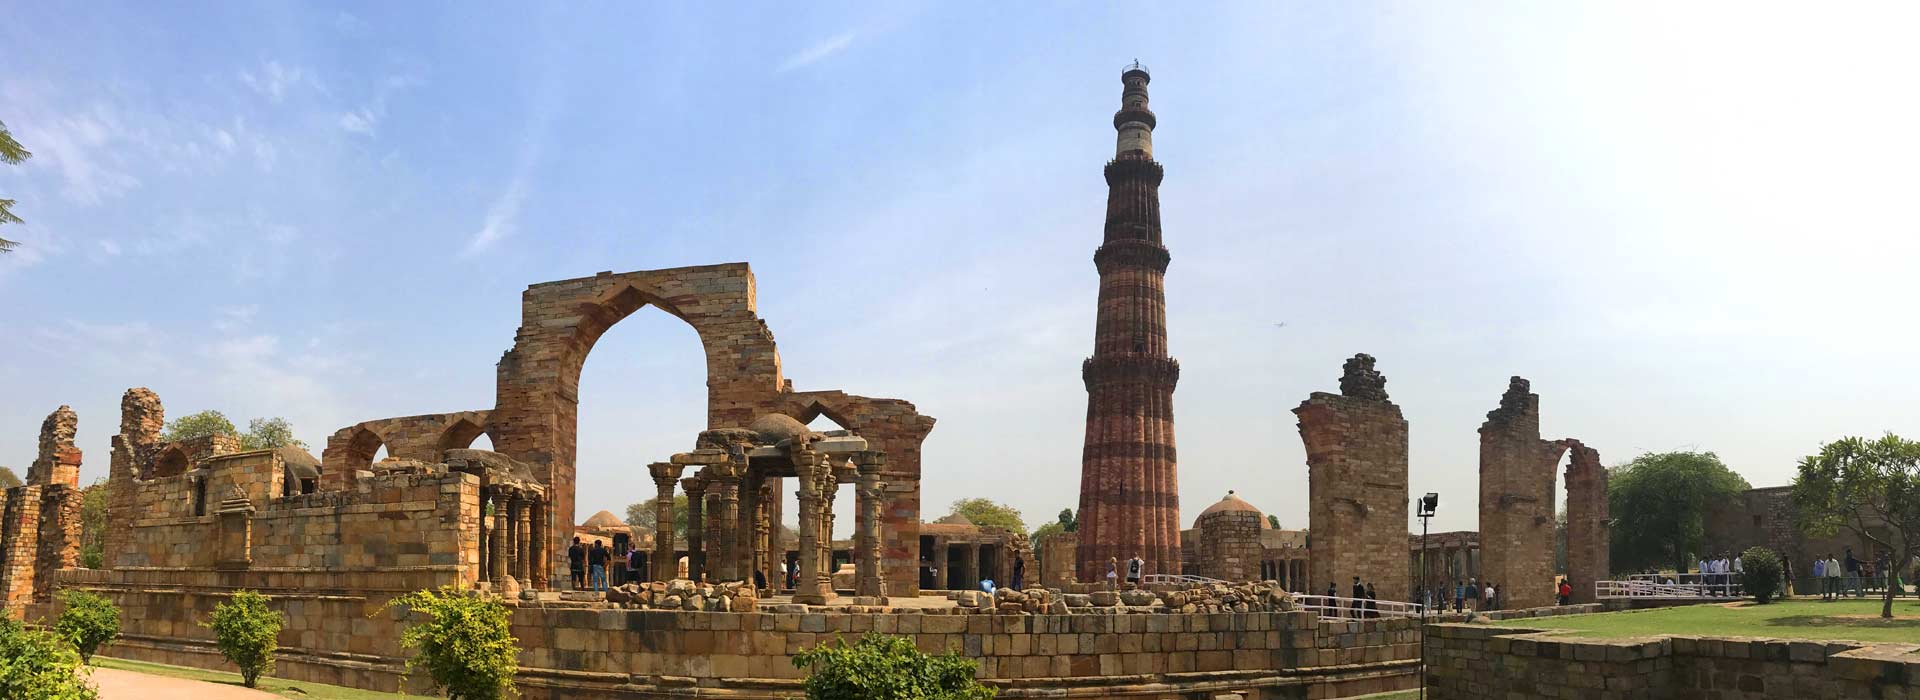 Qutub Minar (DELHI)